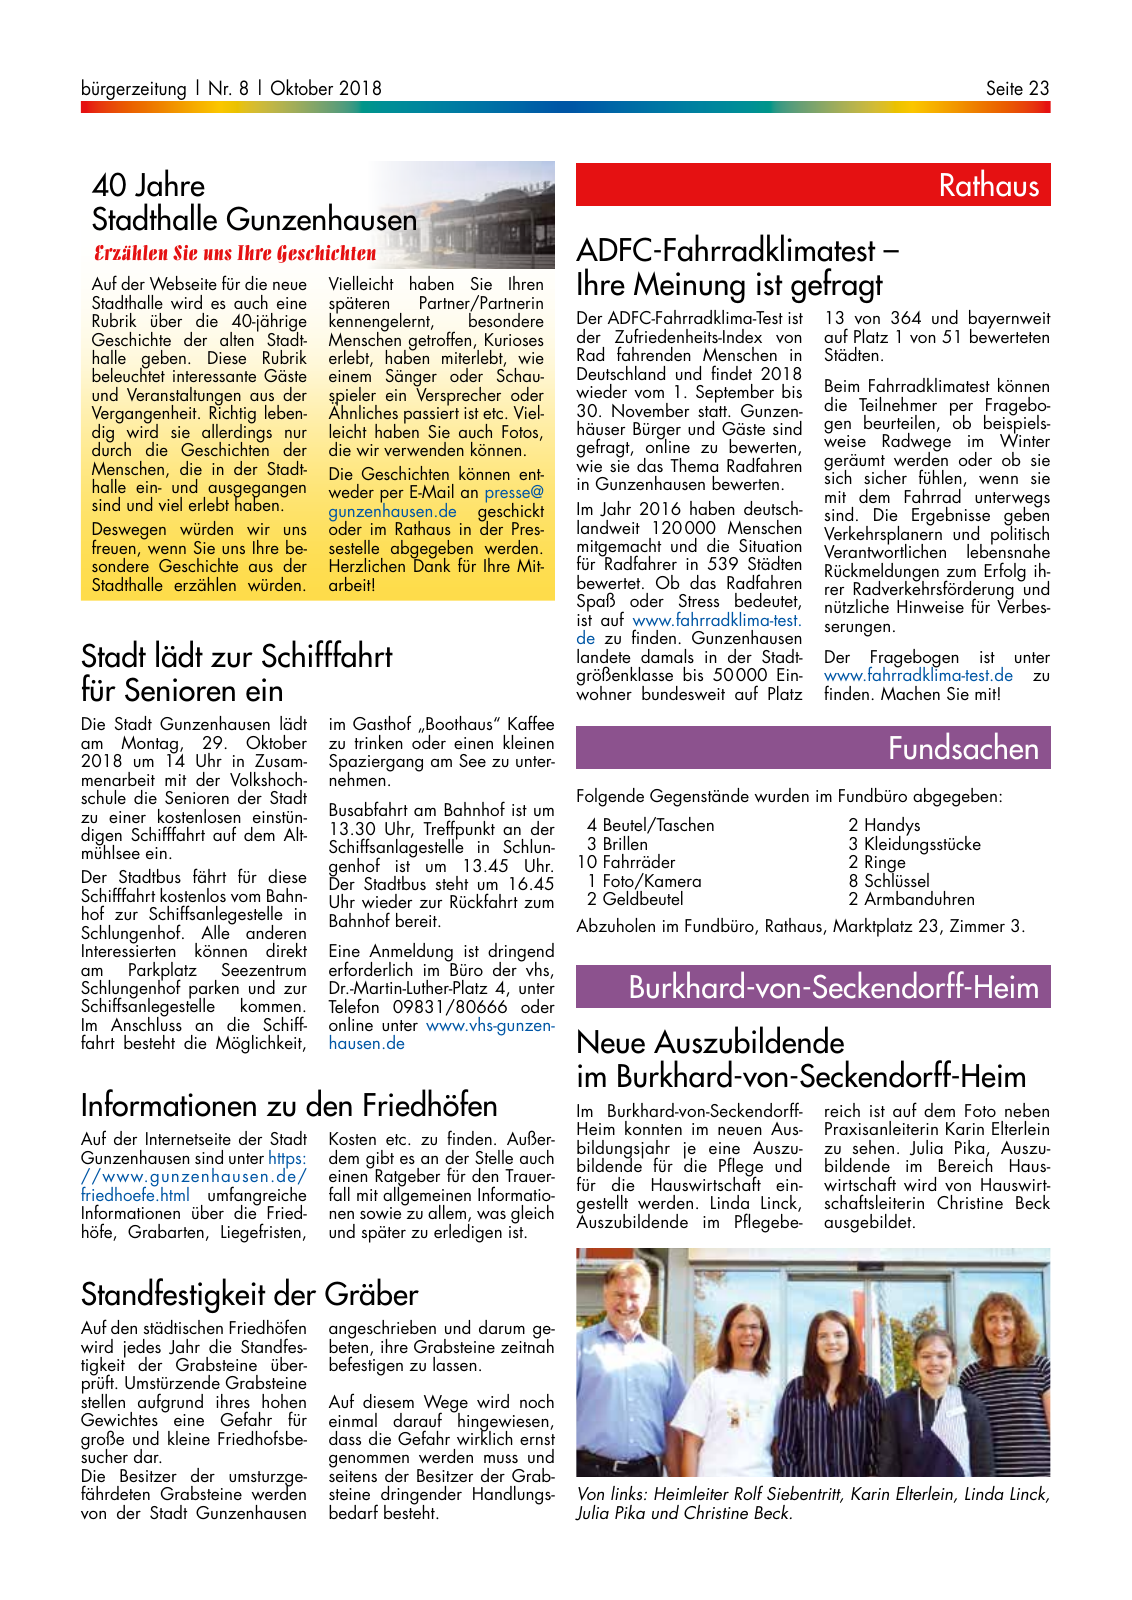 Vorschau buergerzeitung_08_2018 Seite 23